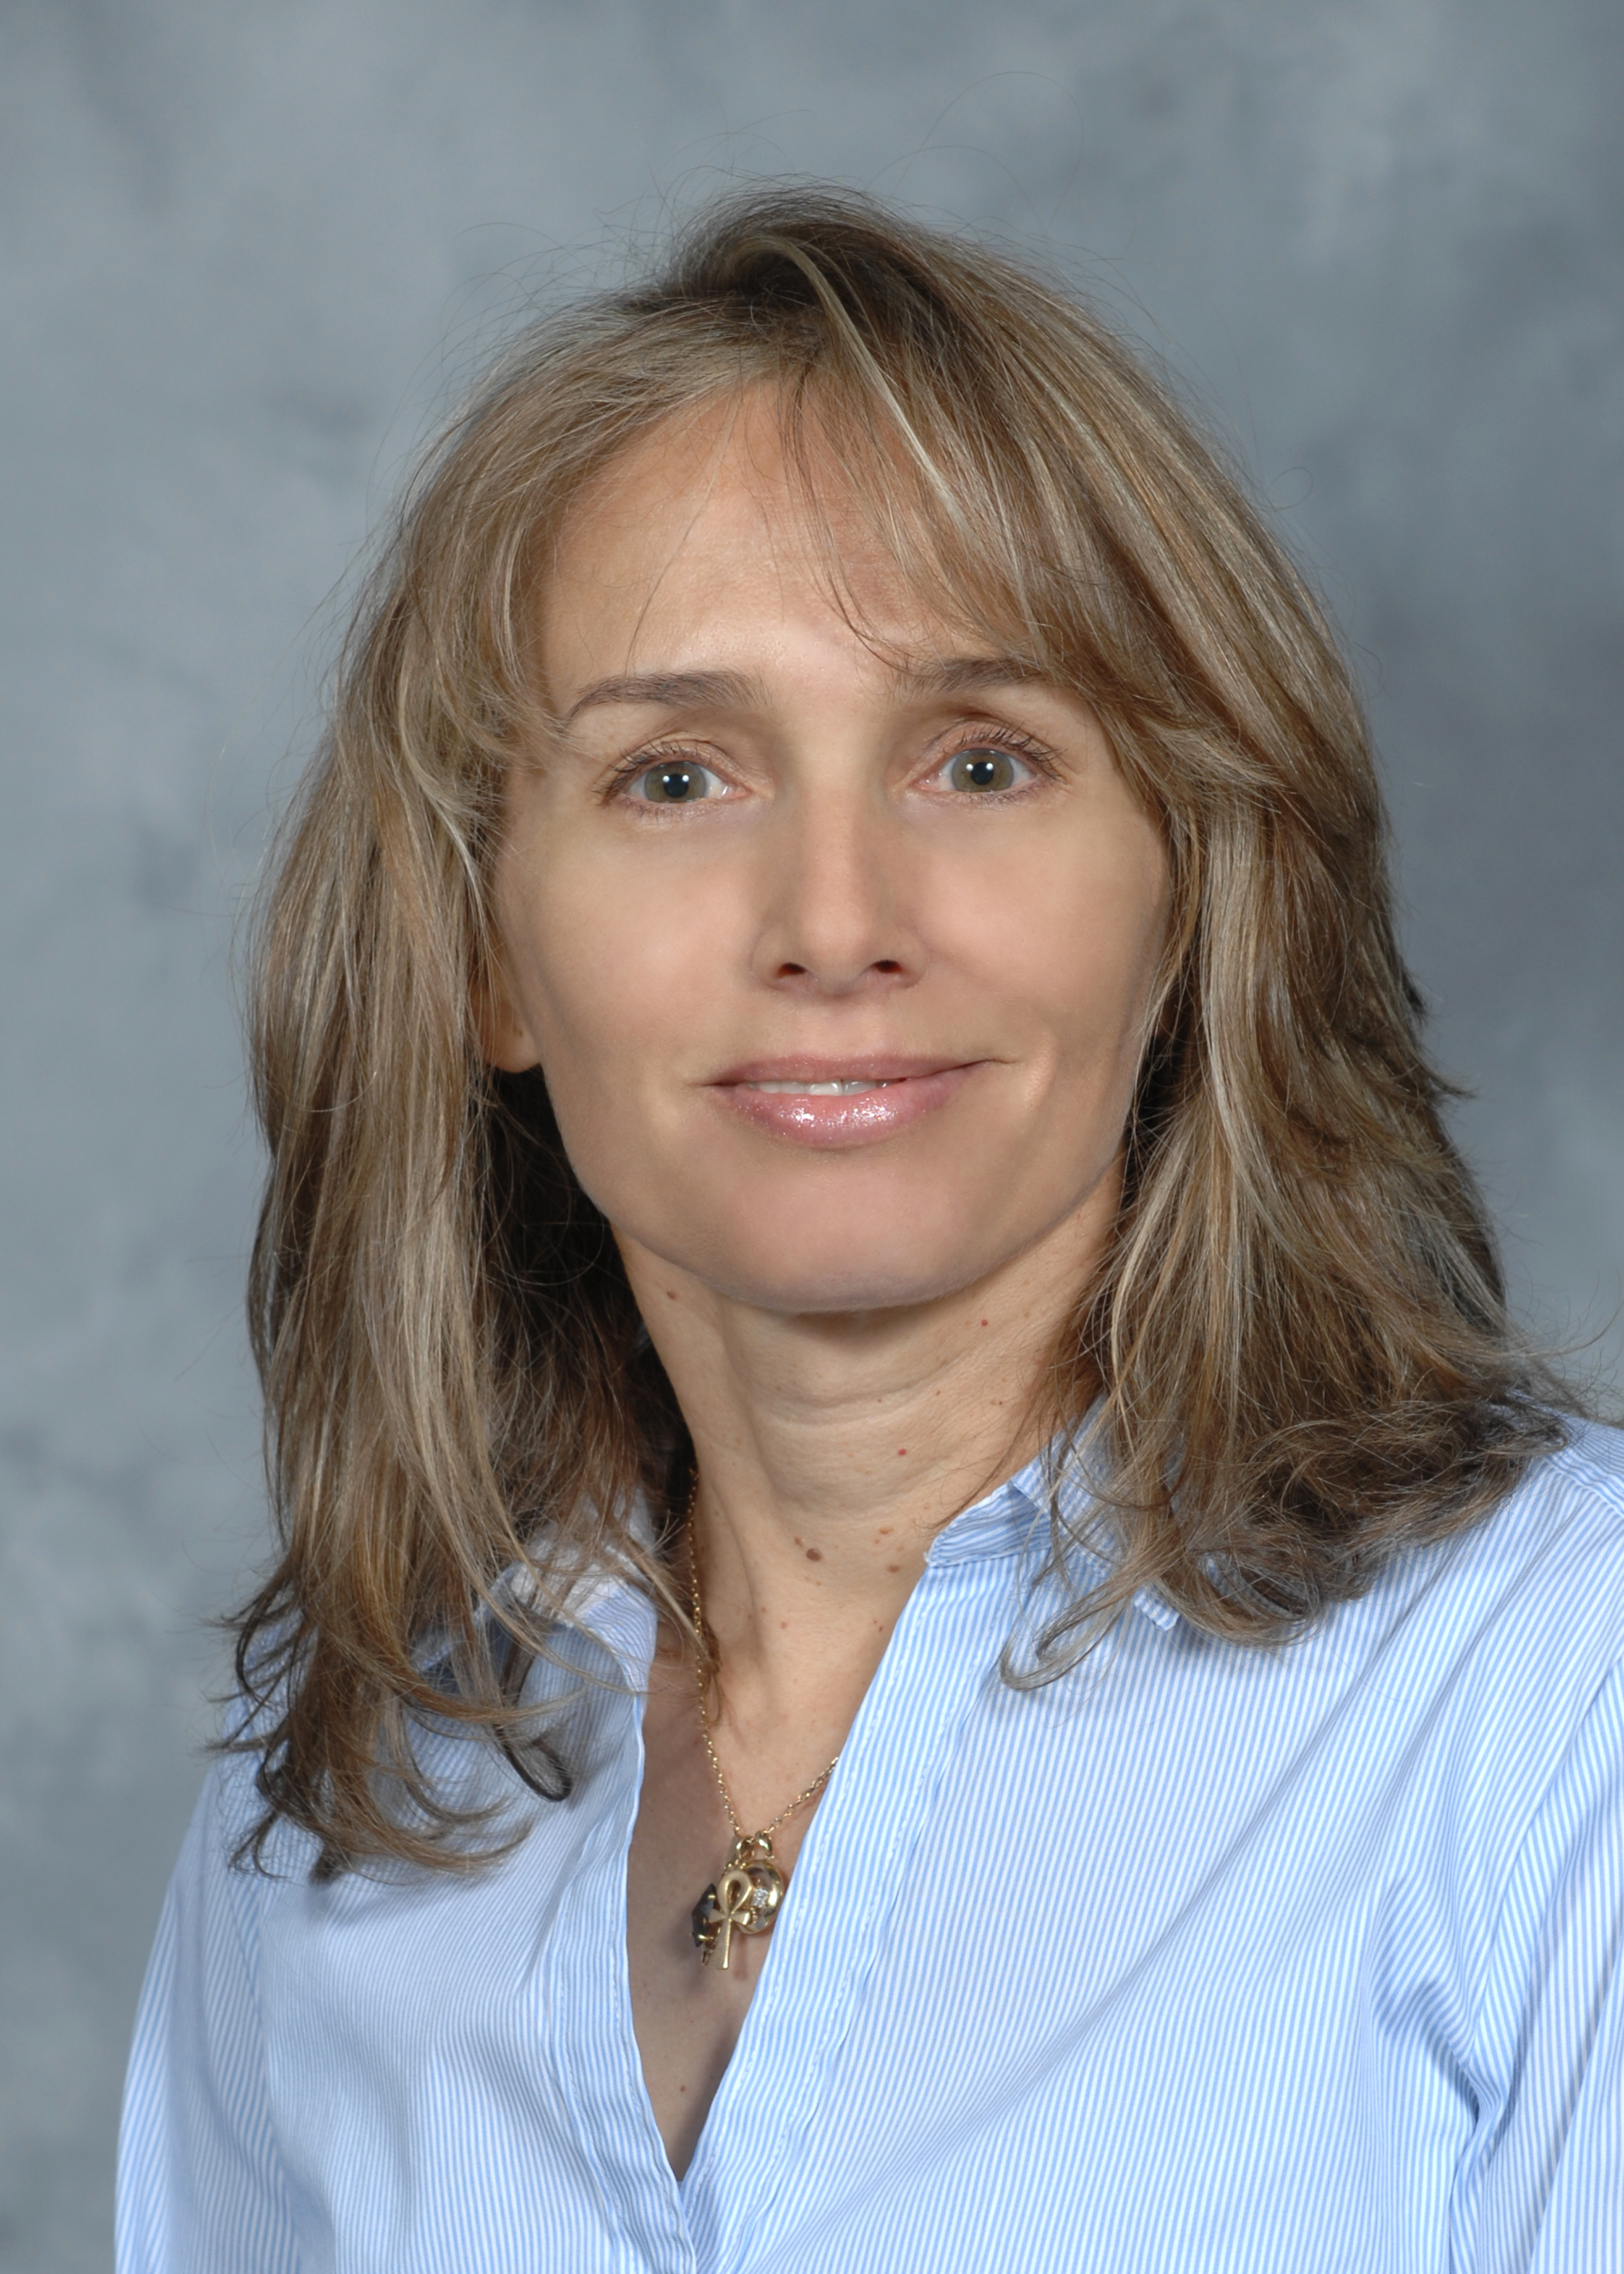 Professor Patricia Wall